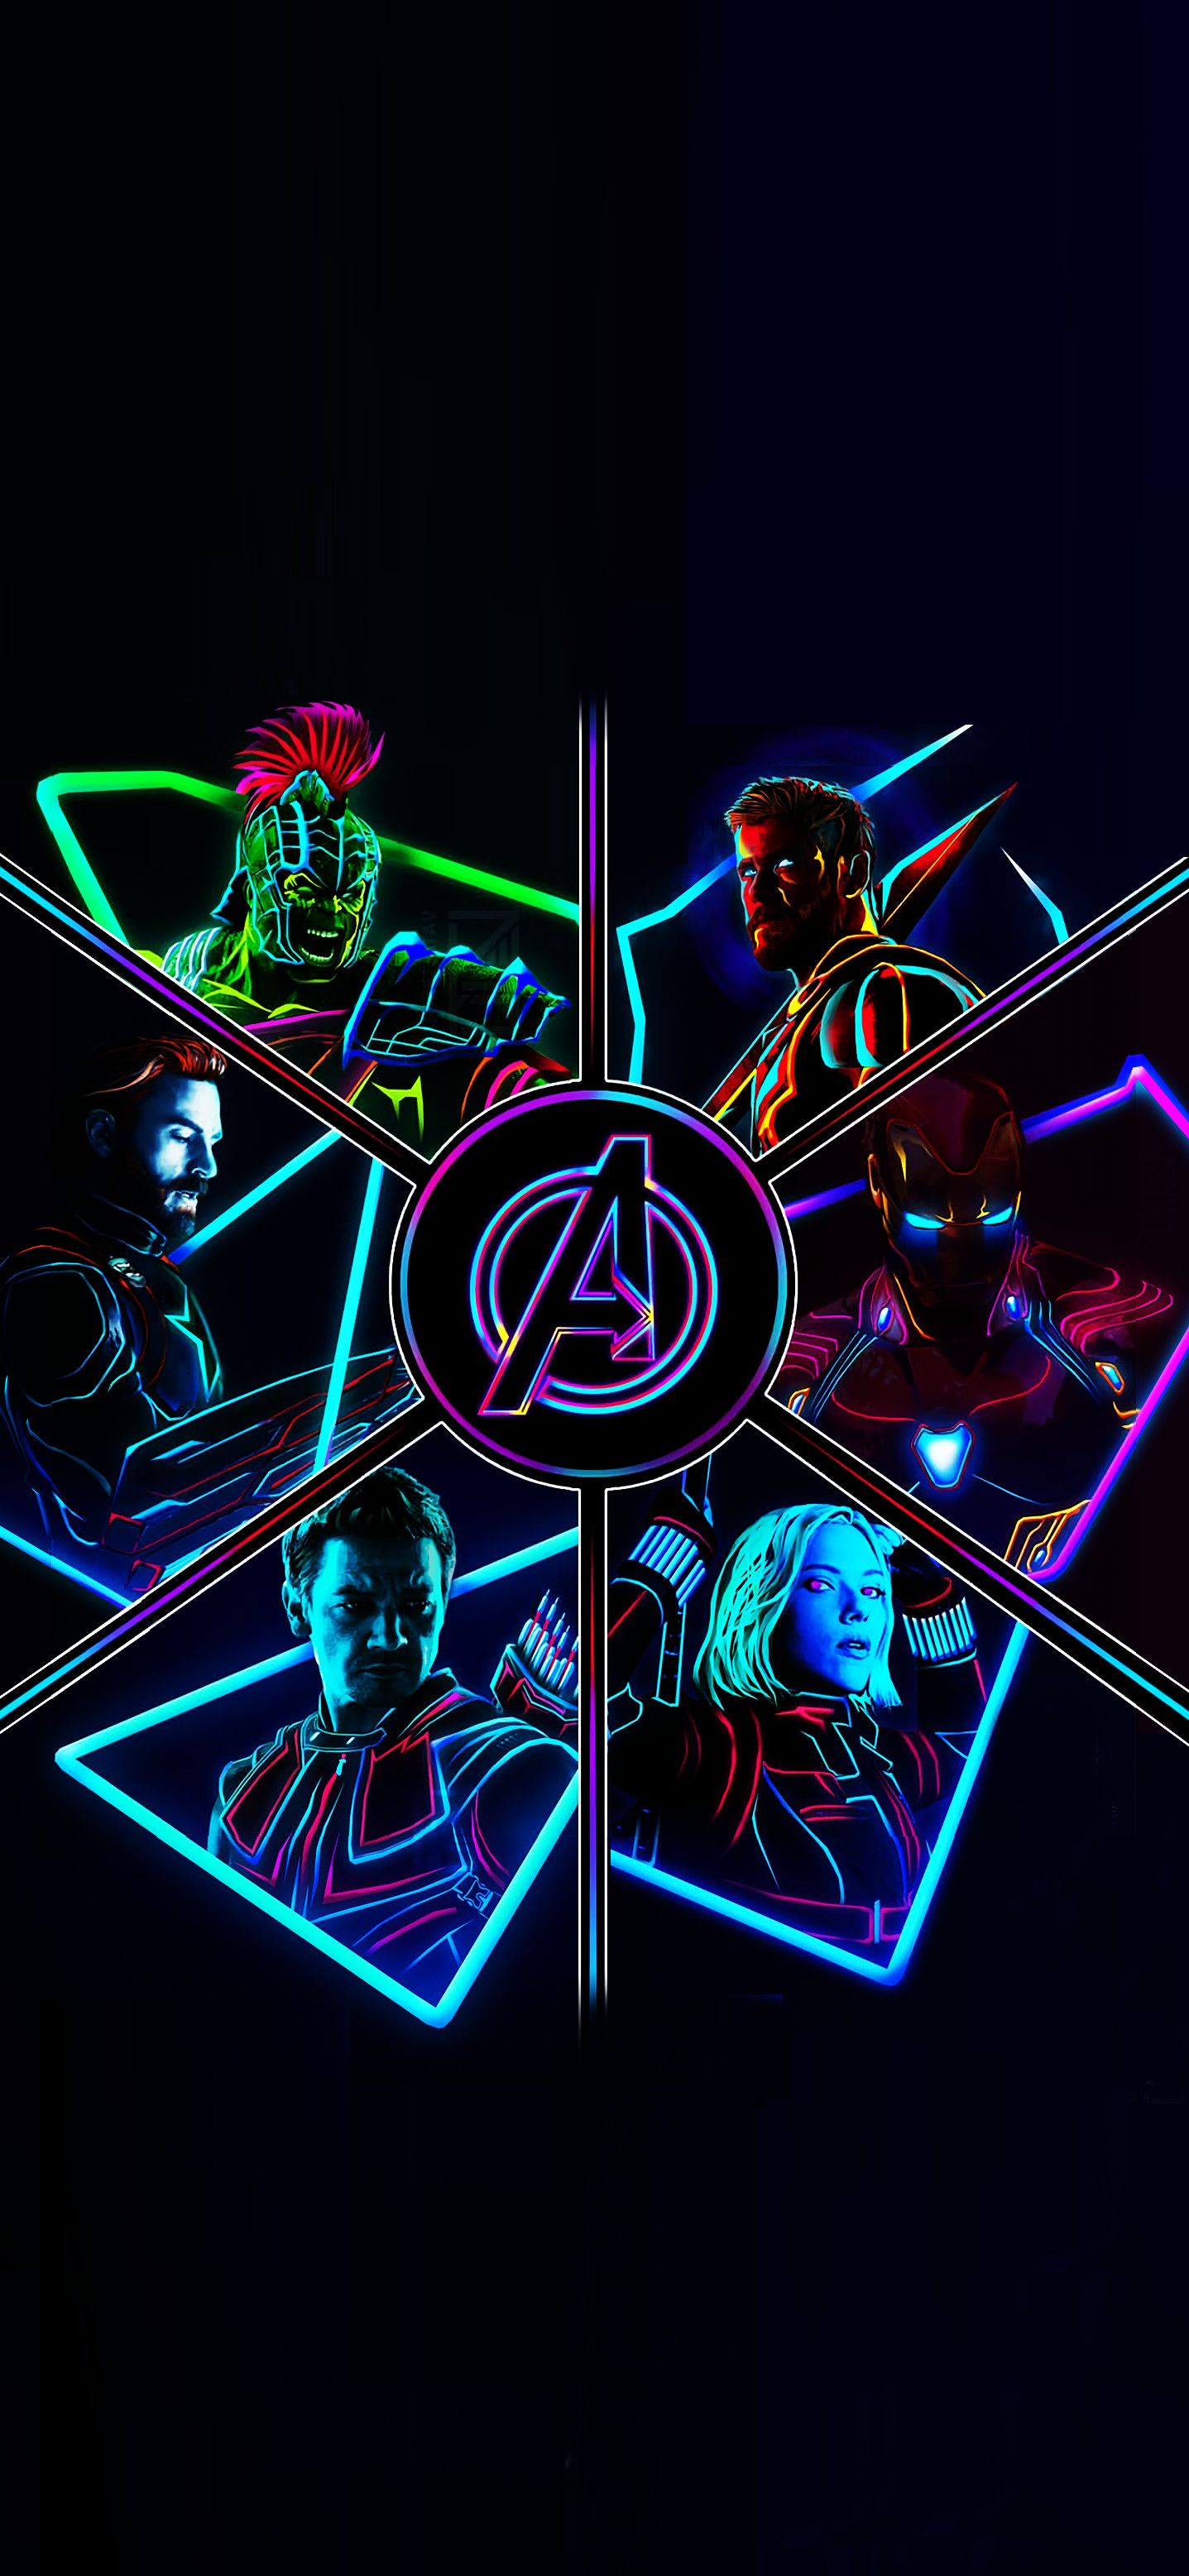 1437x 2012 Neon Avengers Full Res Phone Wallpaper